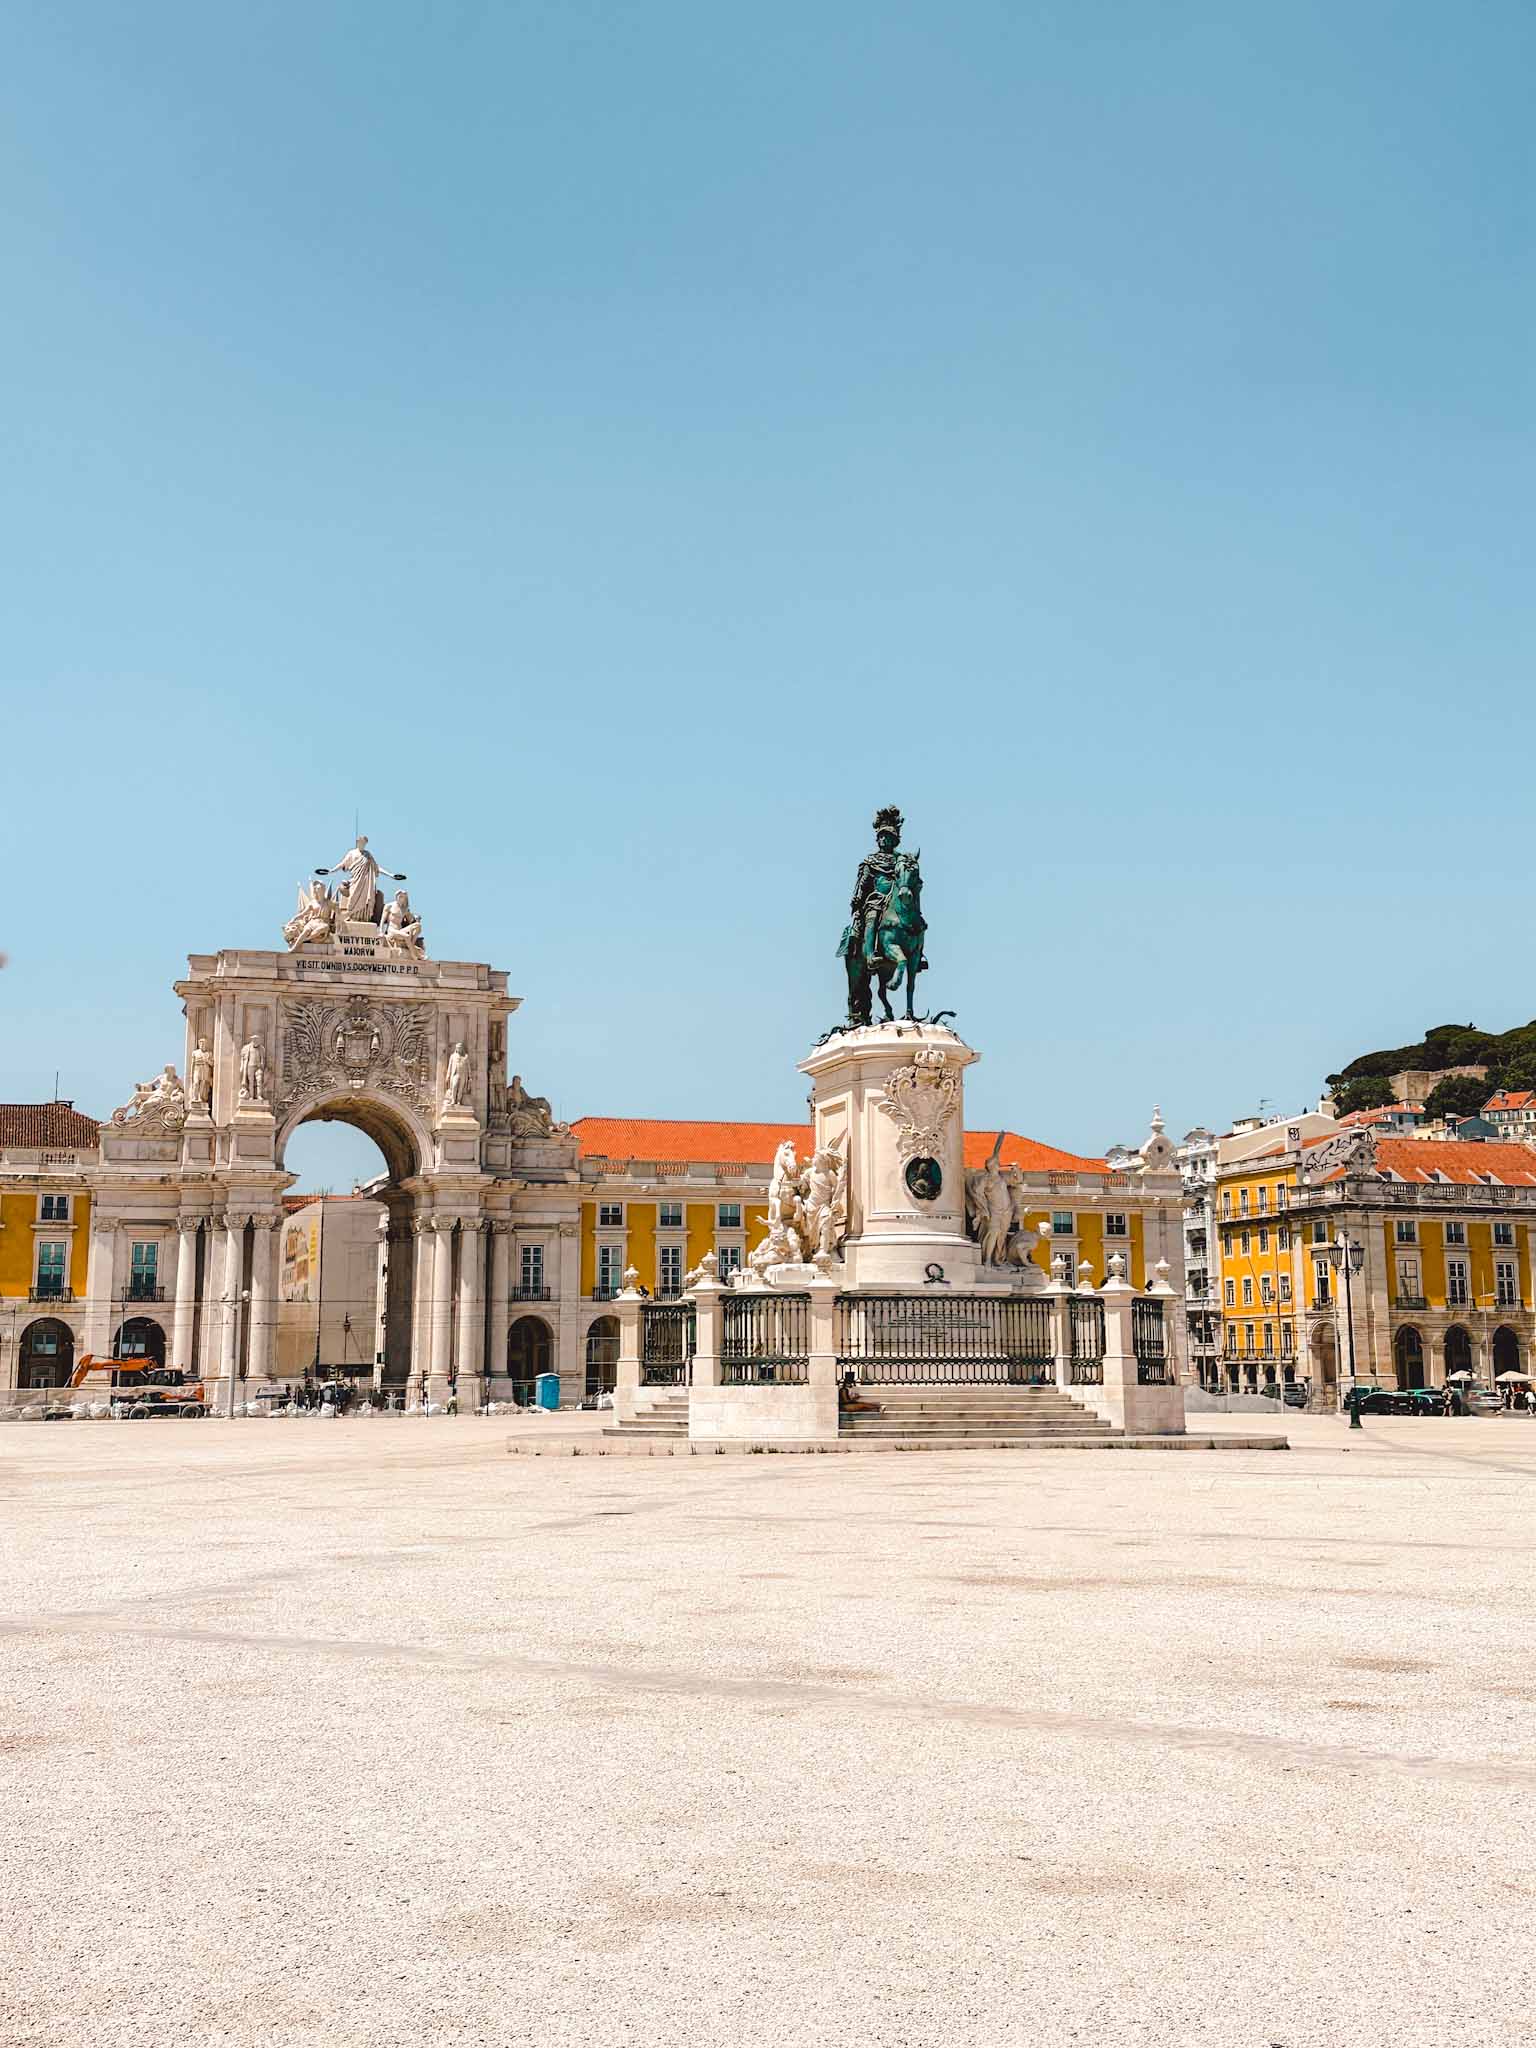 Best Instagram photo spots in Lisbon - Praça do Comércio